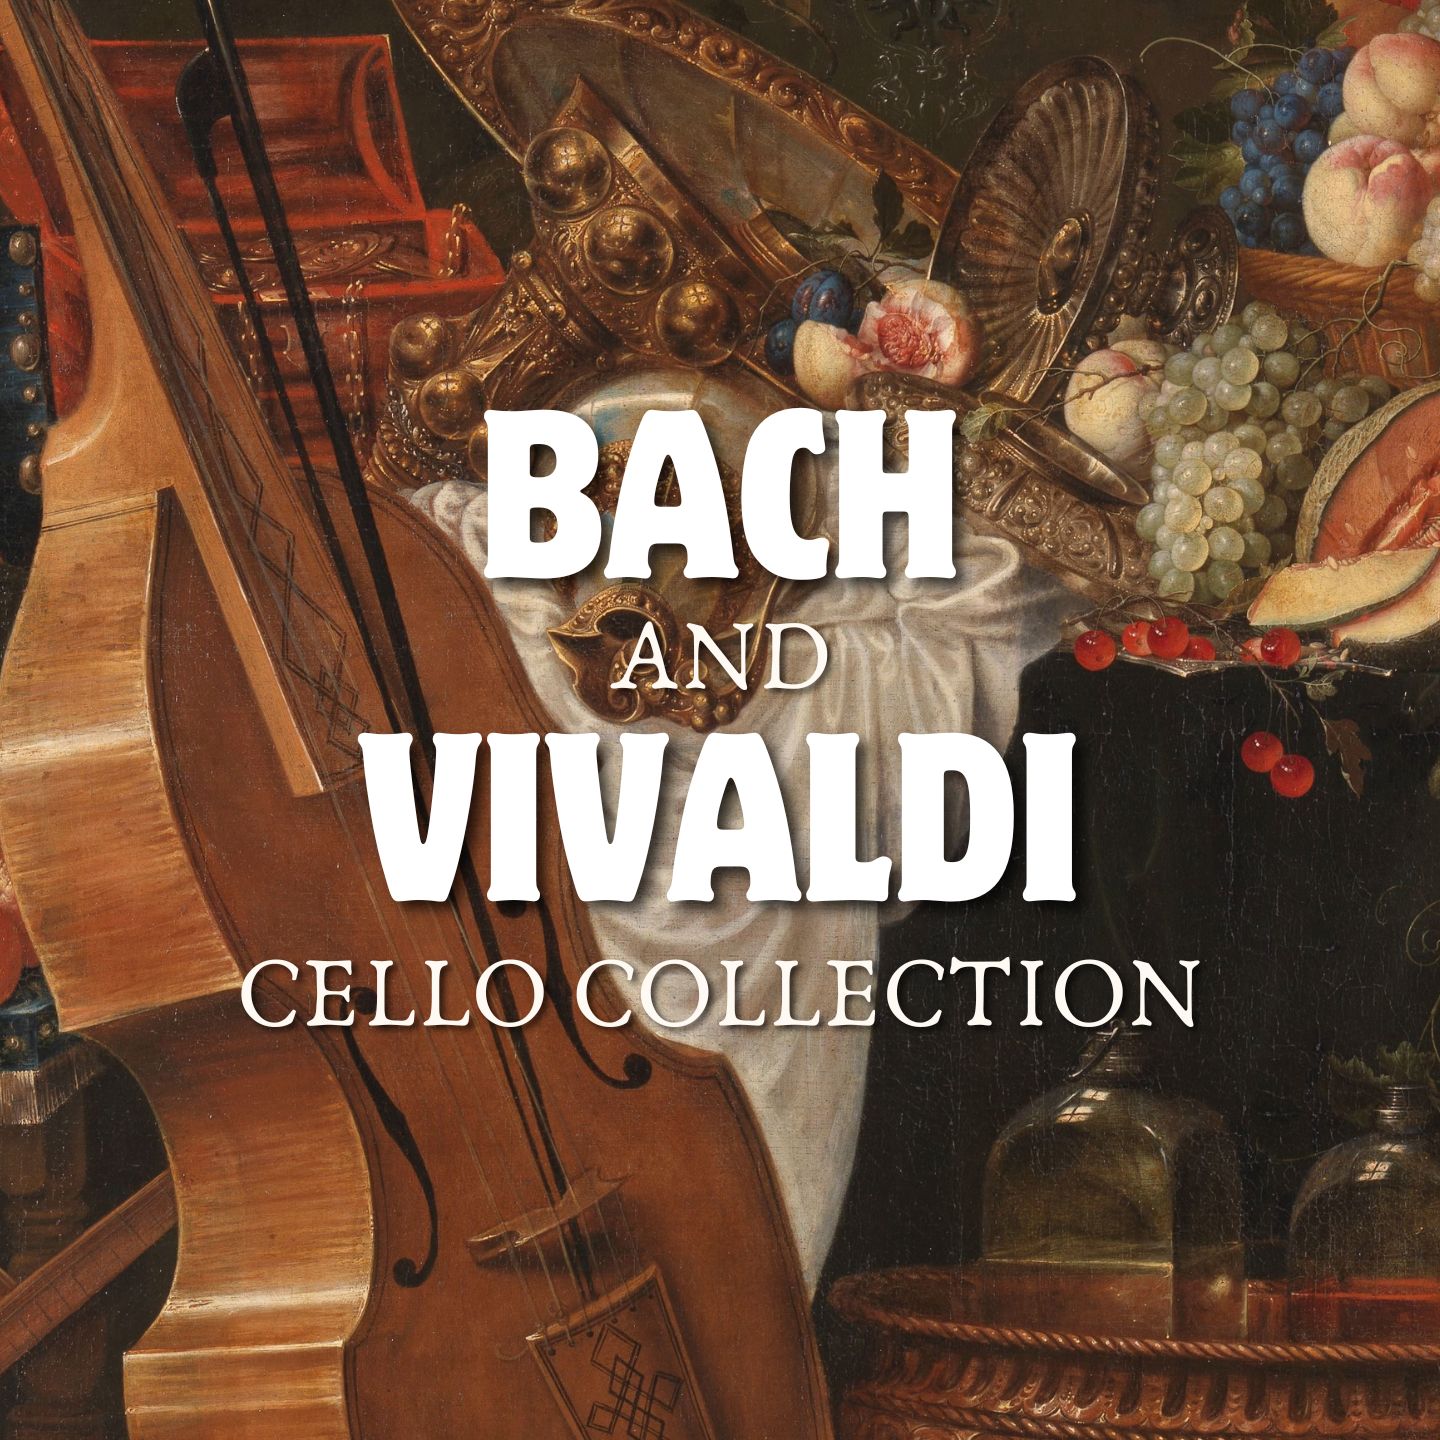 Bach and Vivaldi: Cello Collection